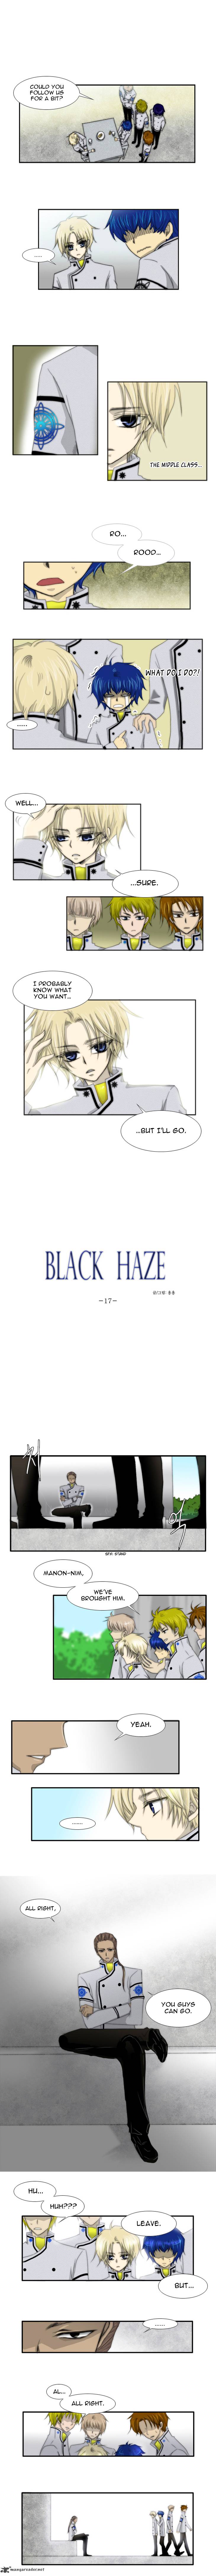 black_haze_17_1